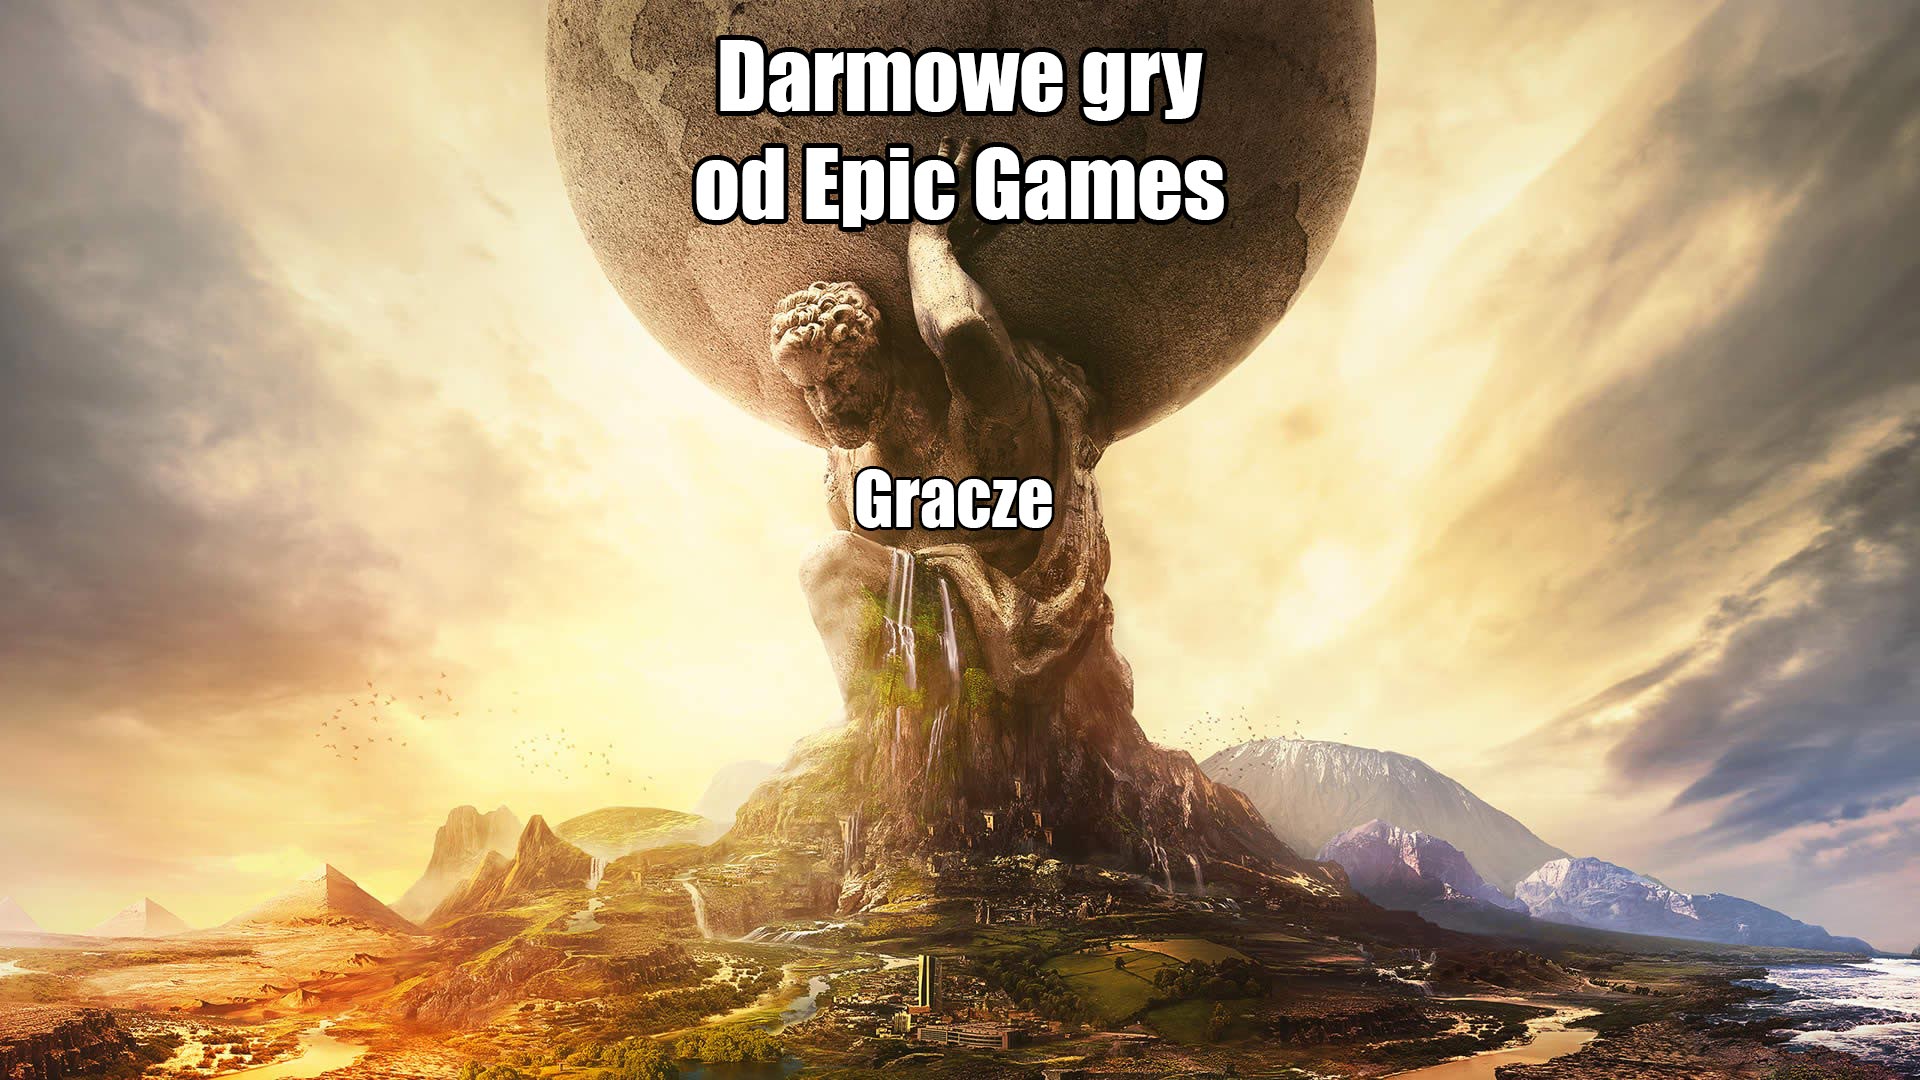 civilization vi free epic games za darmo